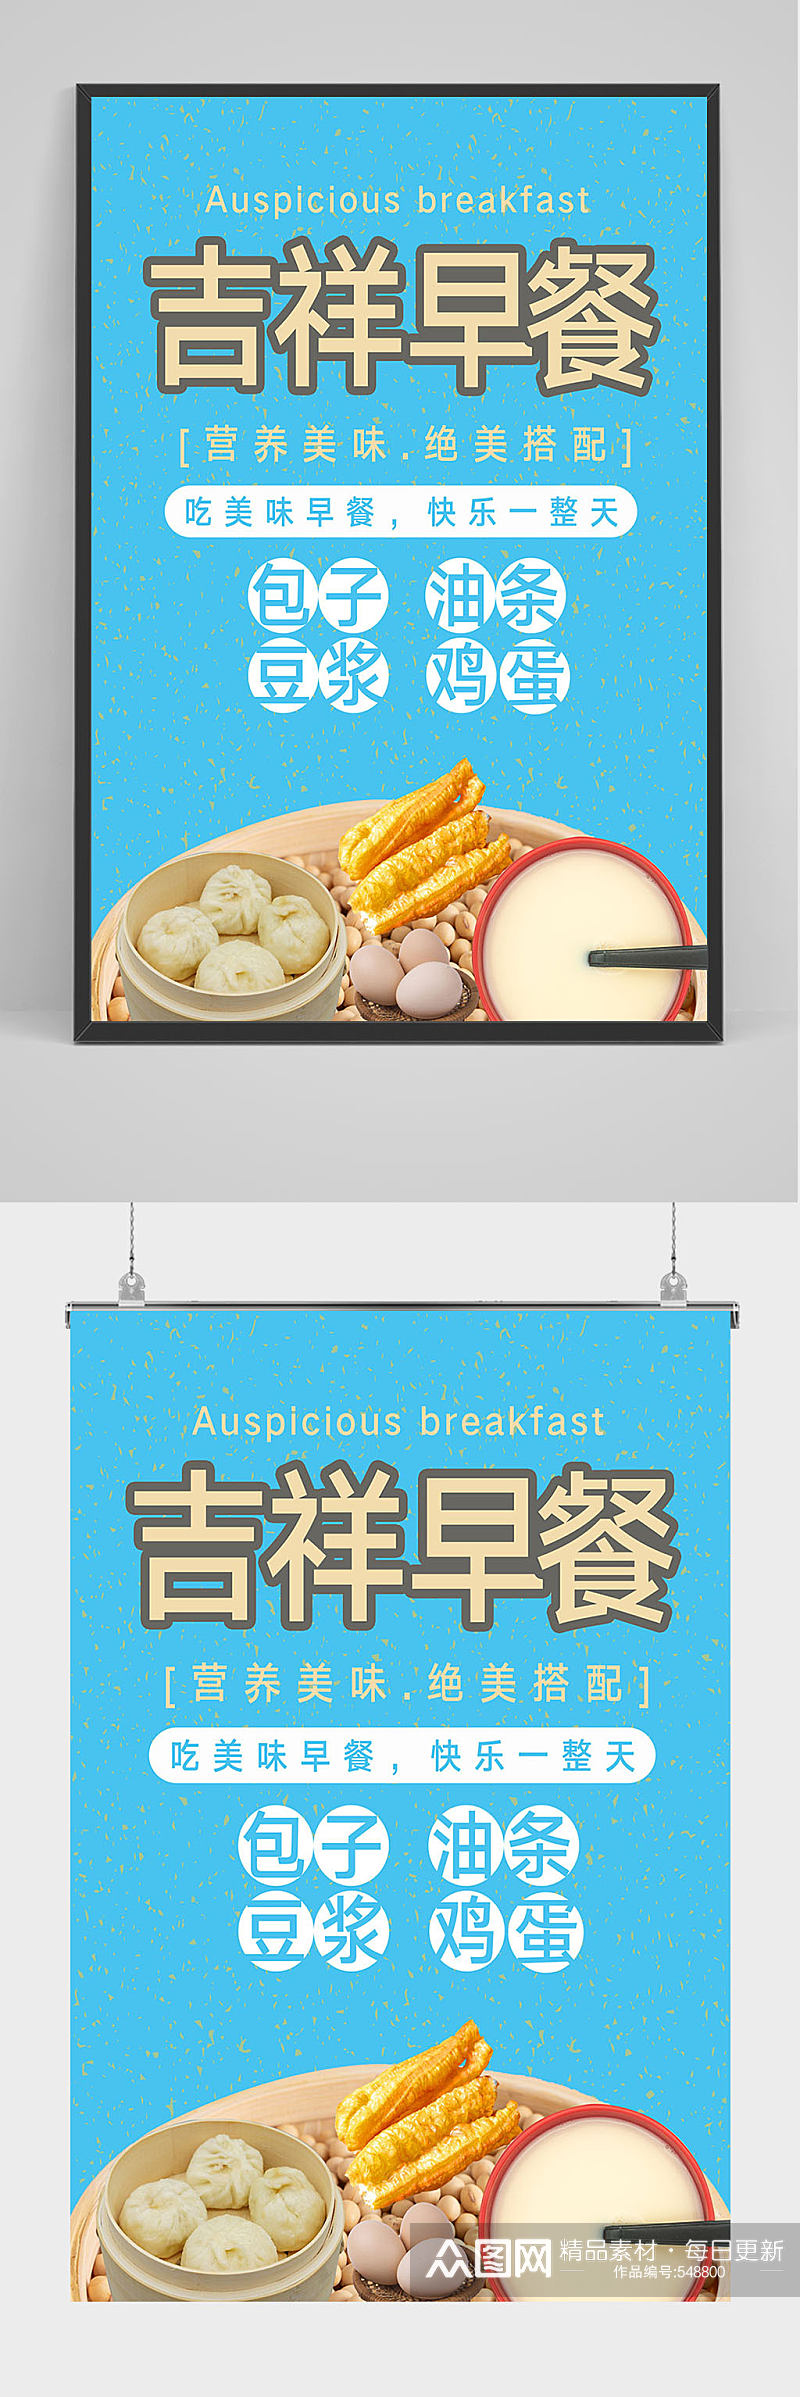 精品早餐豆浆油条海报设计素材